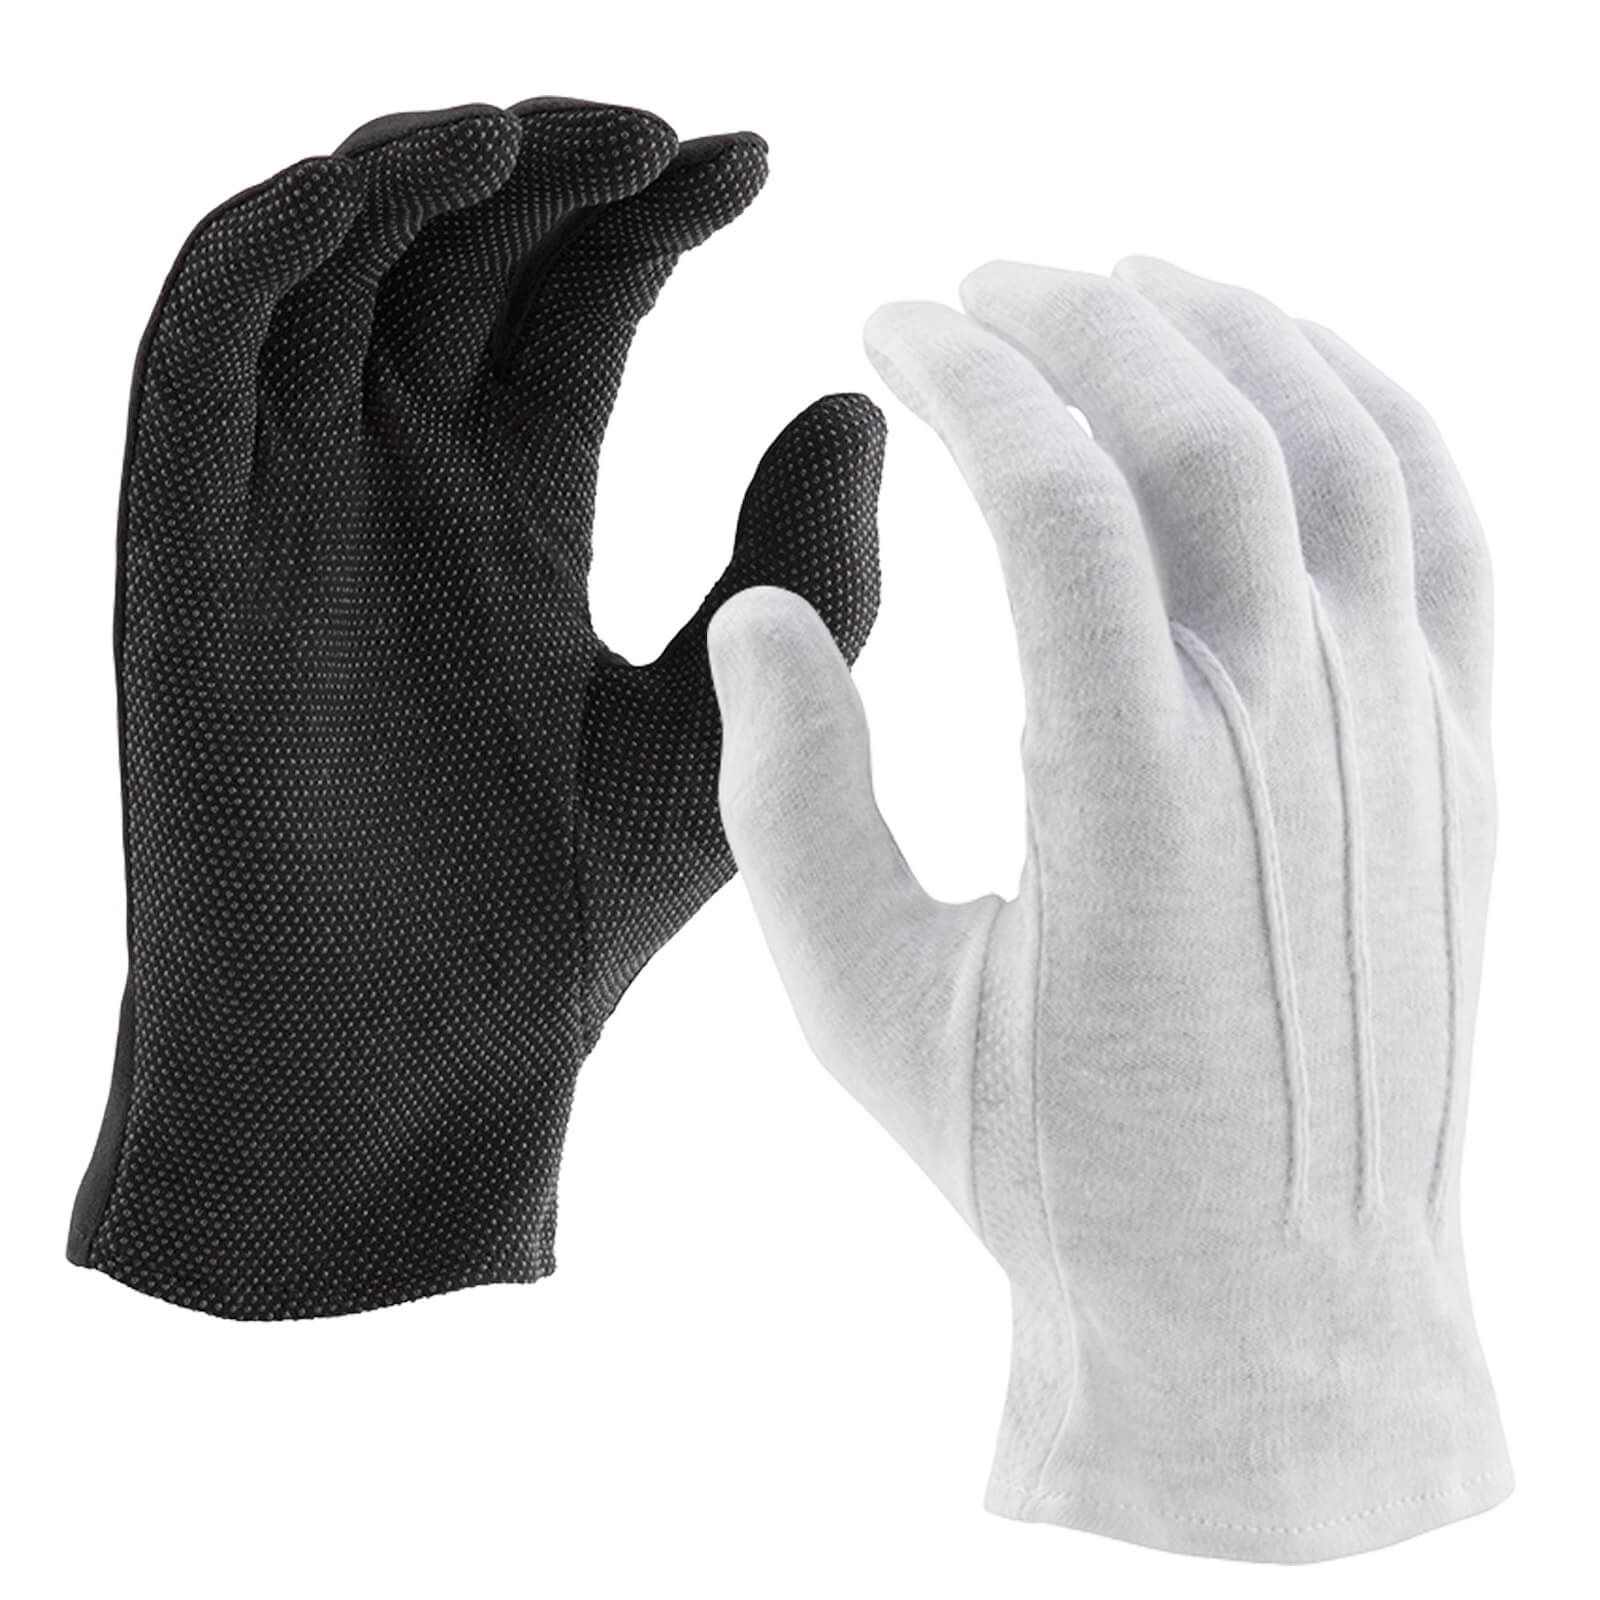 Black Cotton Sure Grip Slip-On Glove Large Dozen 